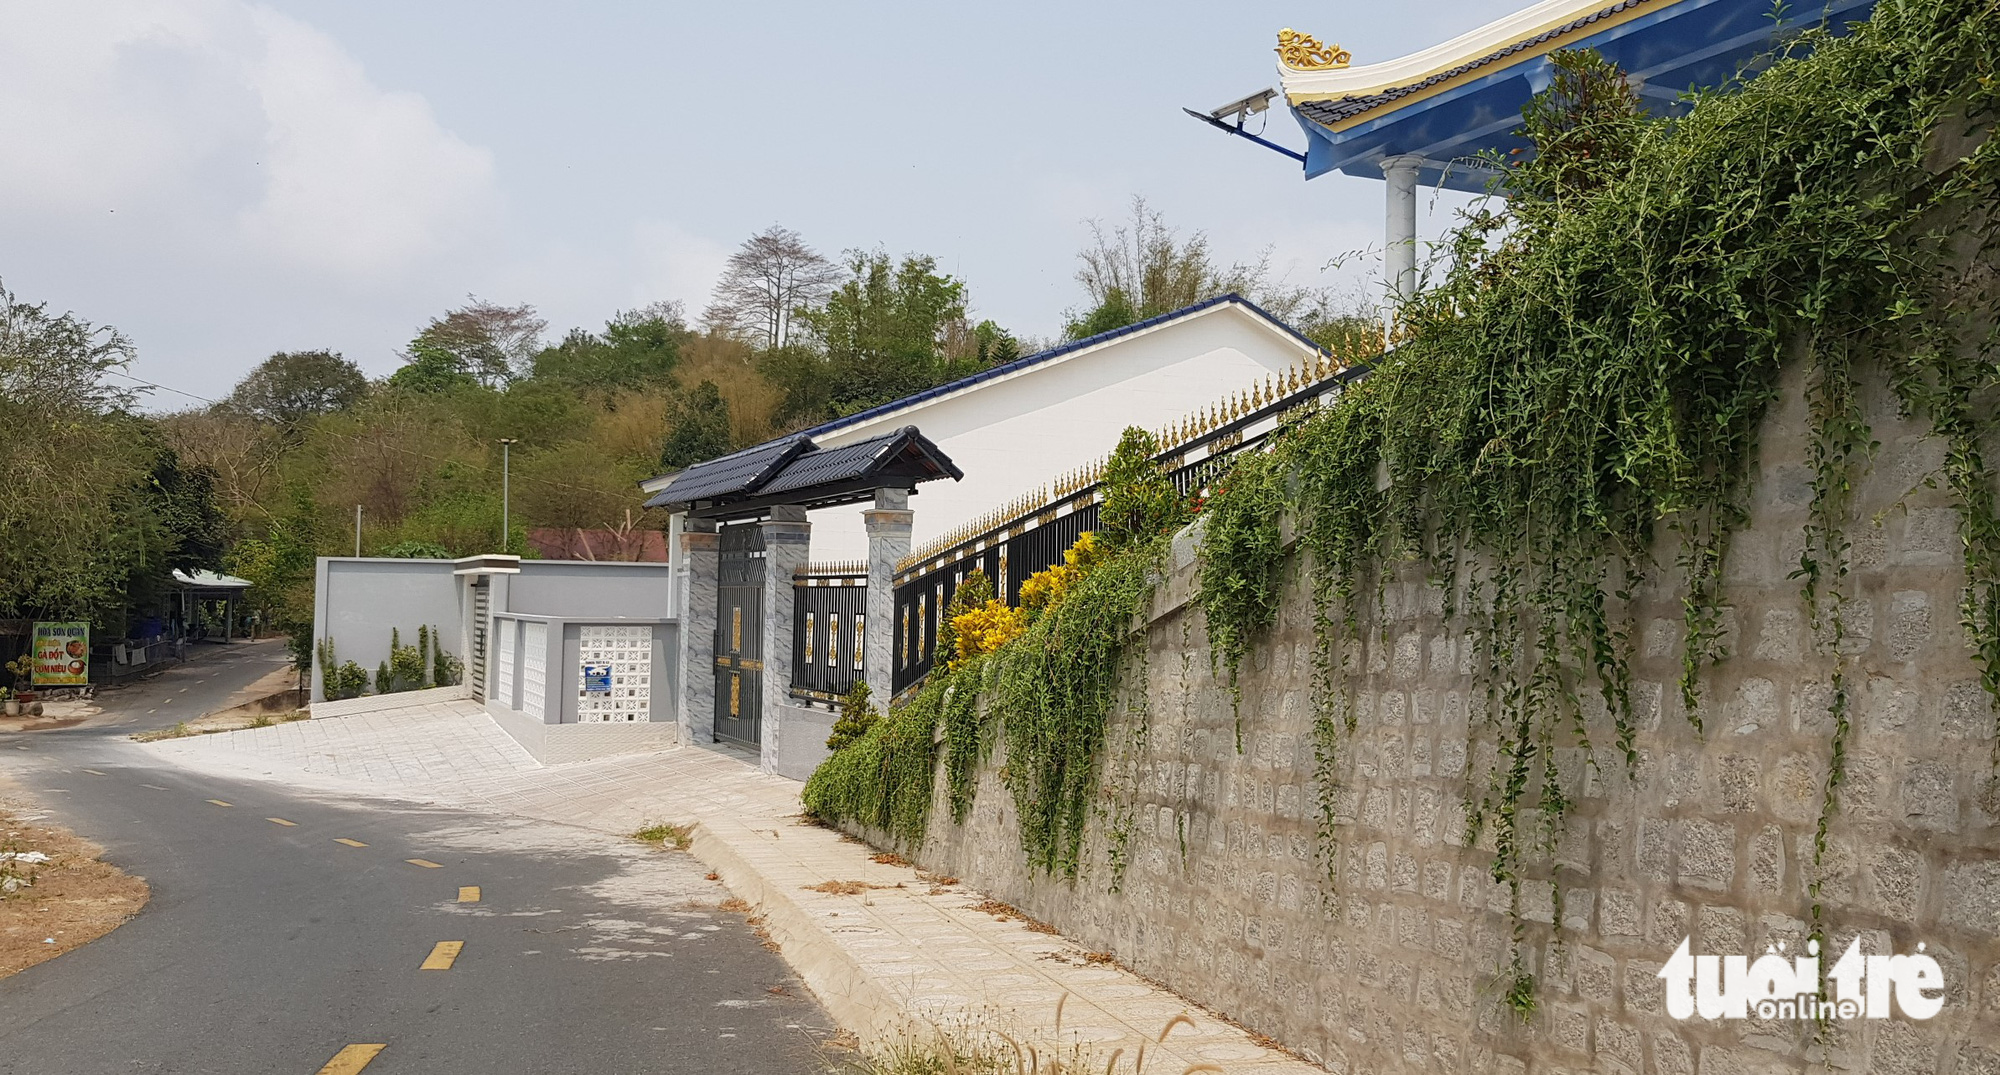 Lãnh đạo UBND huyện Thoại Sơn khẳng định chủ các biệt thự đã cam kết tháo gỡ trong vòng 30 ngày 